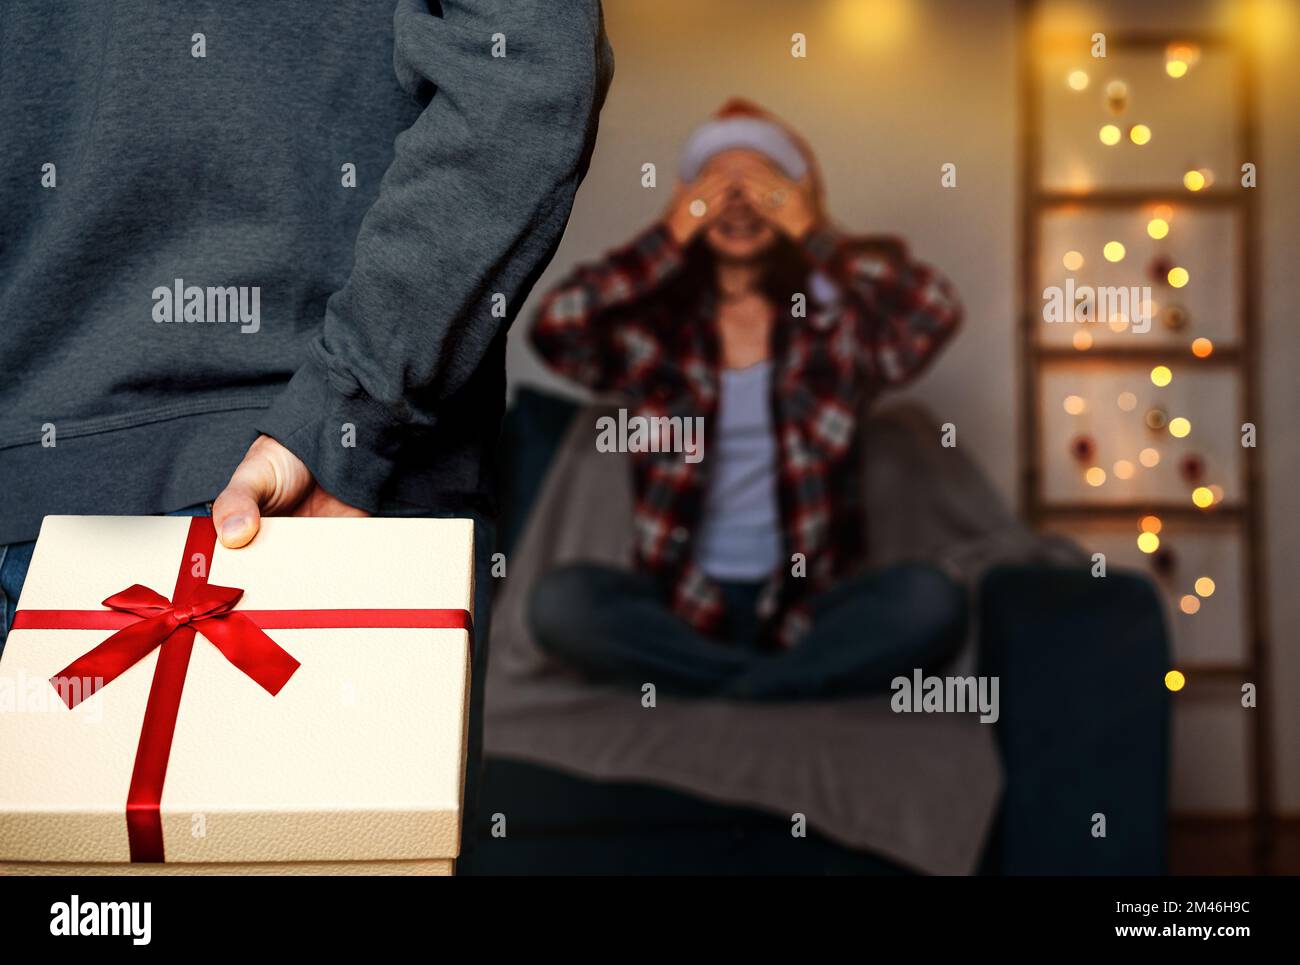 Weihnachtsgeschenke in der Hand hinter dem Rücken unscharfe Frau mit geschlossenen Augen sitzt auf dem Sofa und wartet auf Weihnachtsgeschenke. Stockfoto